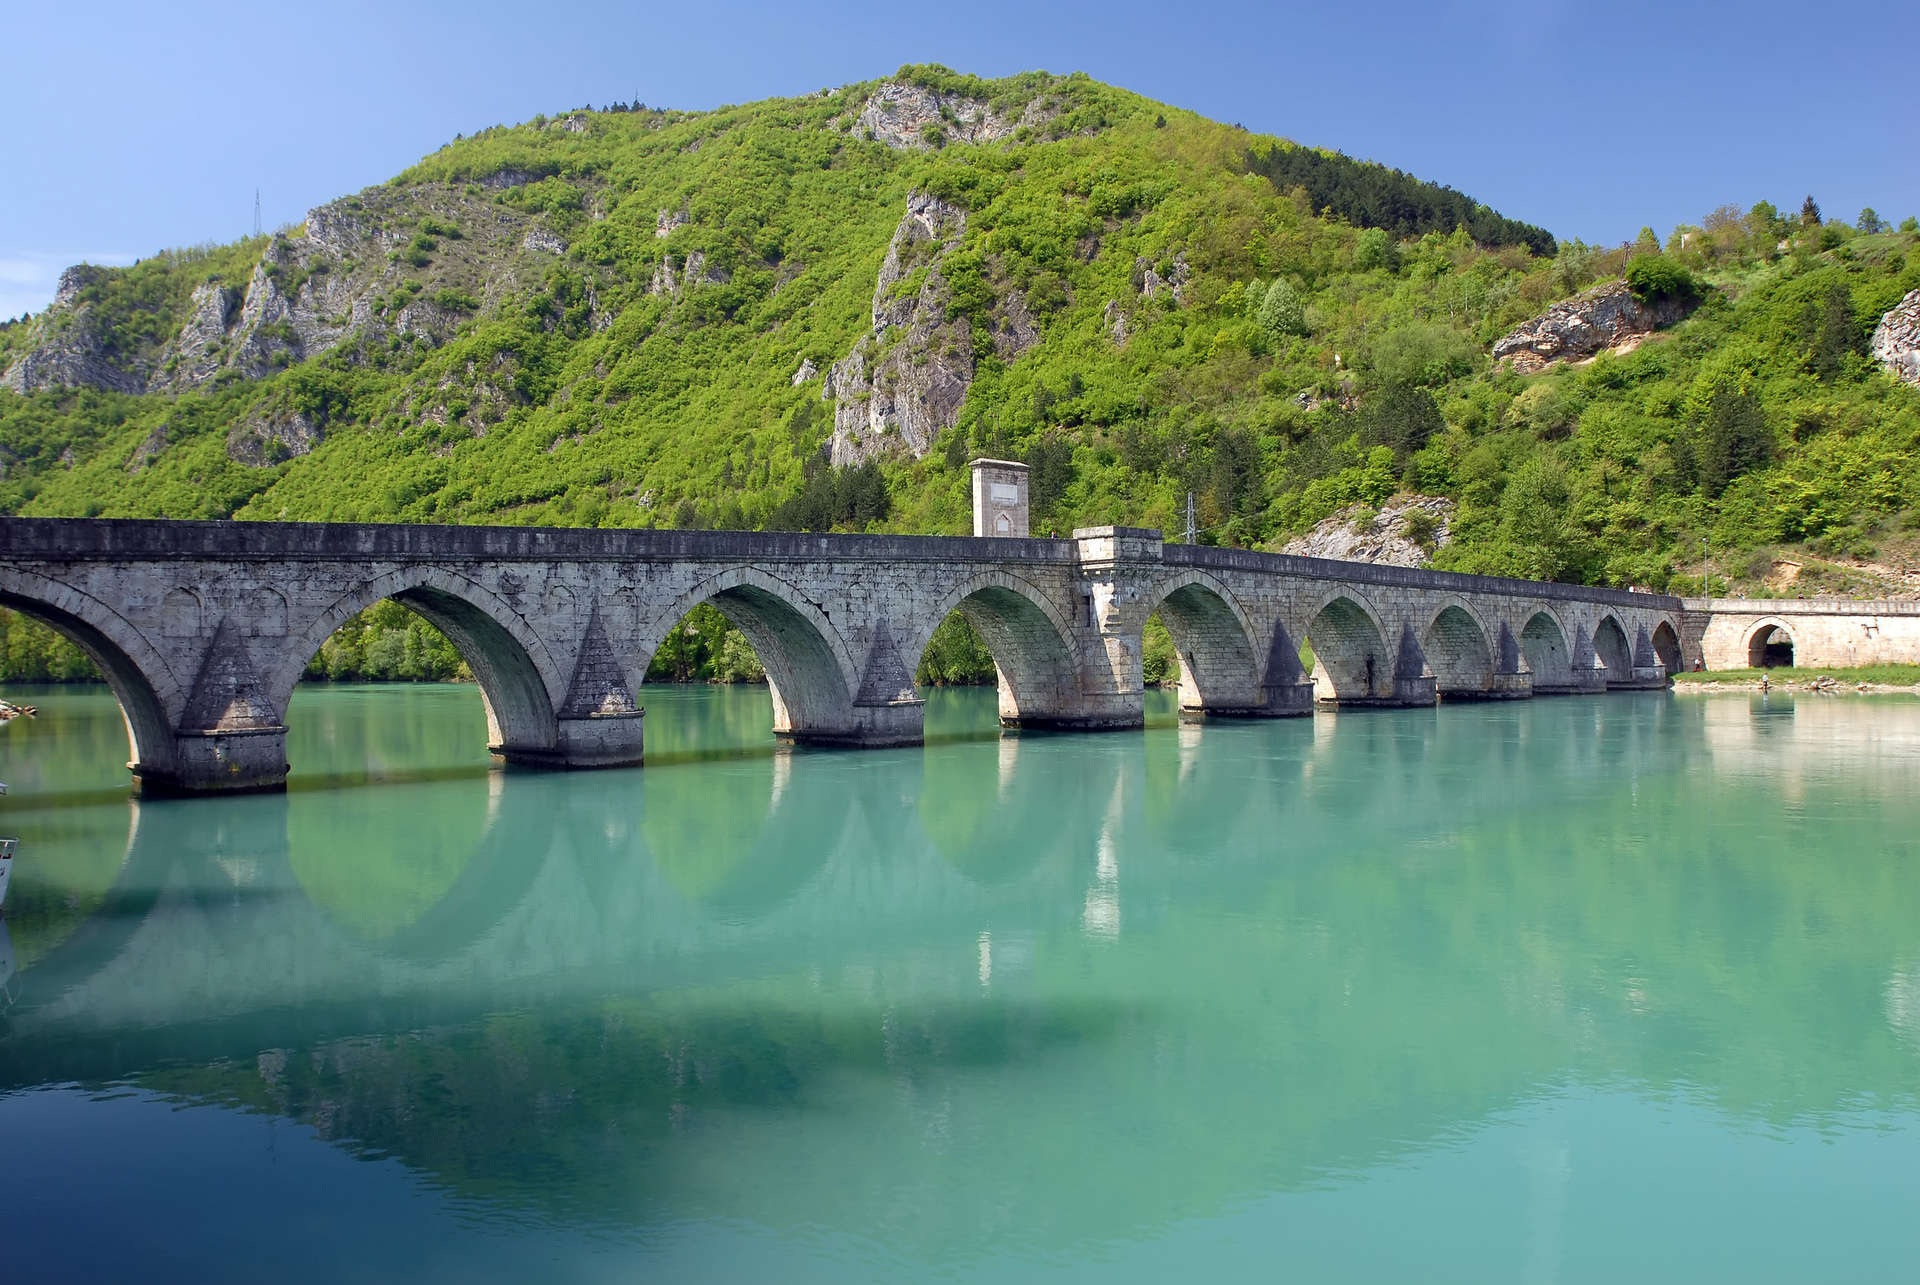 Old stone bridge in Visegrad